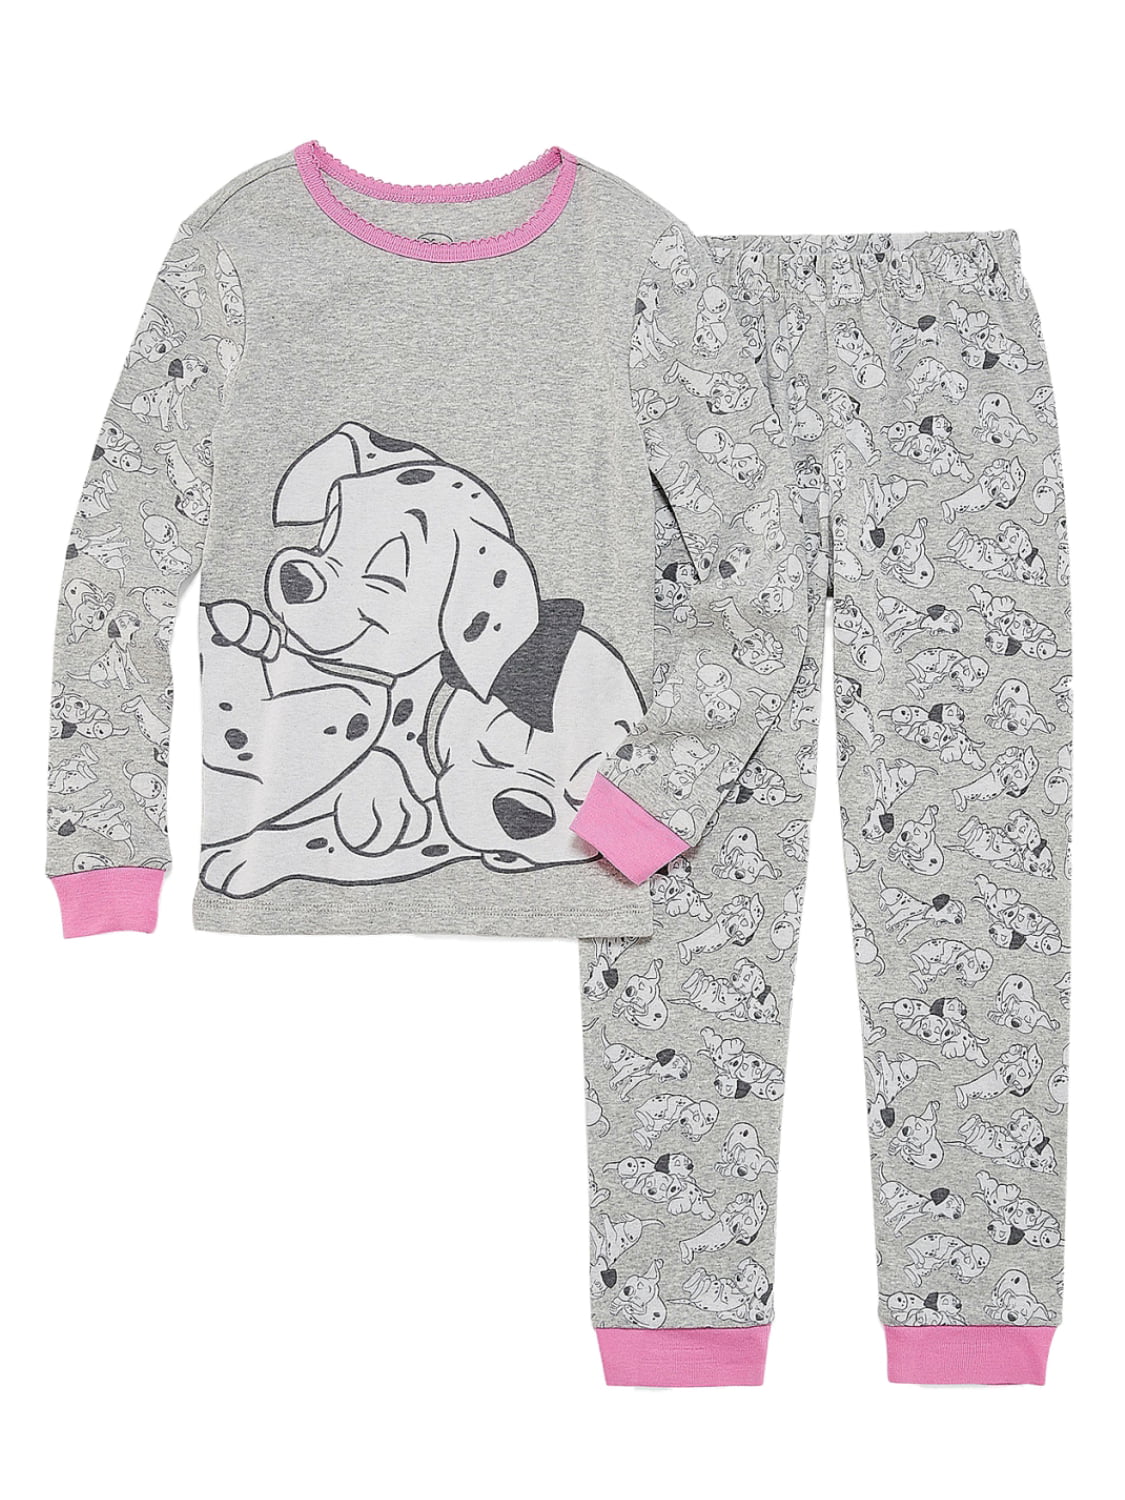 101 dalmatians children's clothes